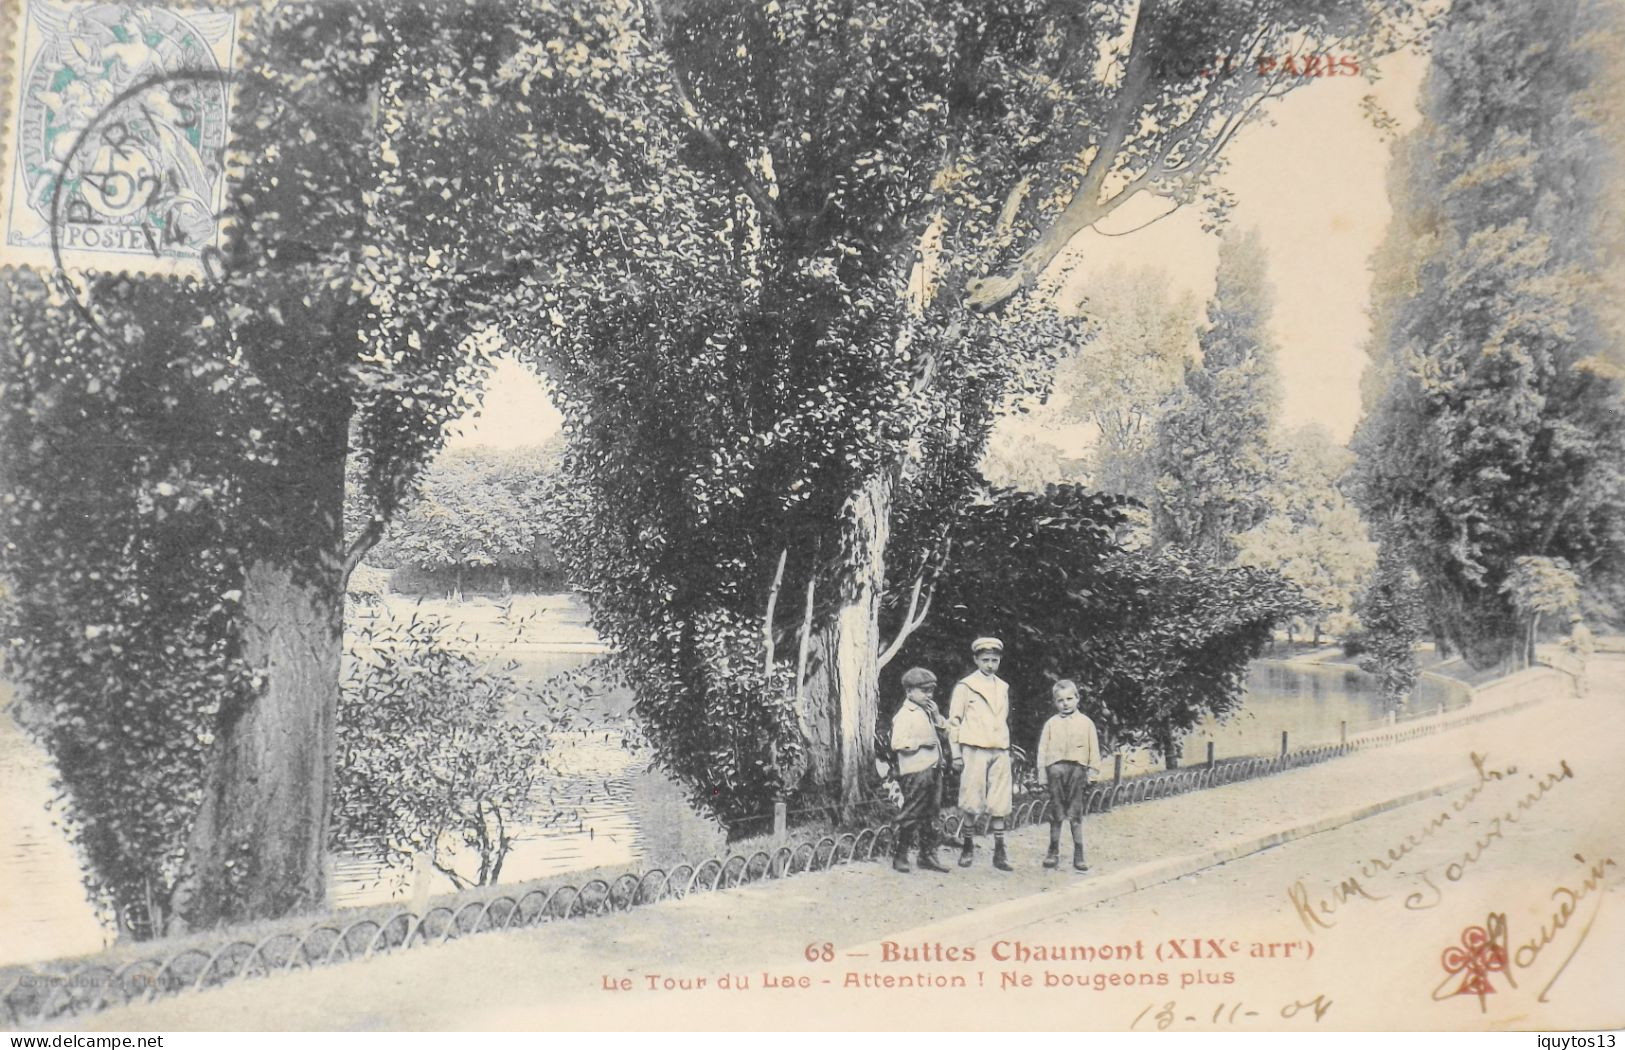 CPA. [75] > TOUT PARIS > N° 68 - BUTTES CHAUMONT LE TOUR DU LAC - ENFANTS - (XIXe Arrt.) 1904 - Coll. F. Fleury - TBE - Arrondissement: 19